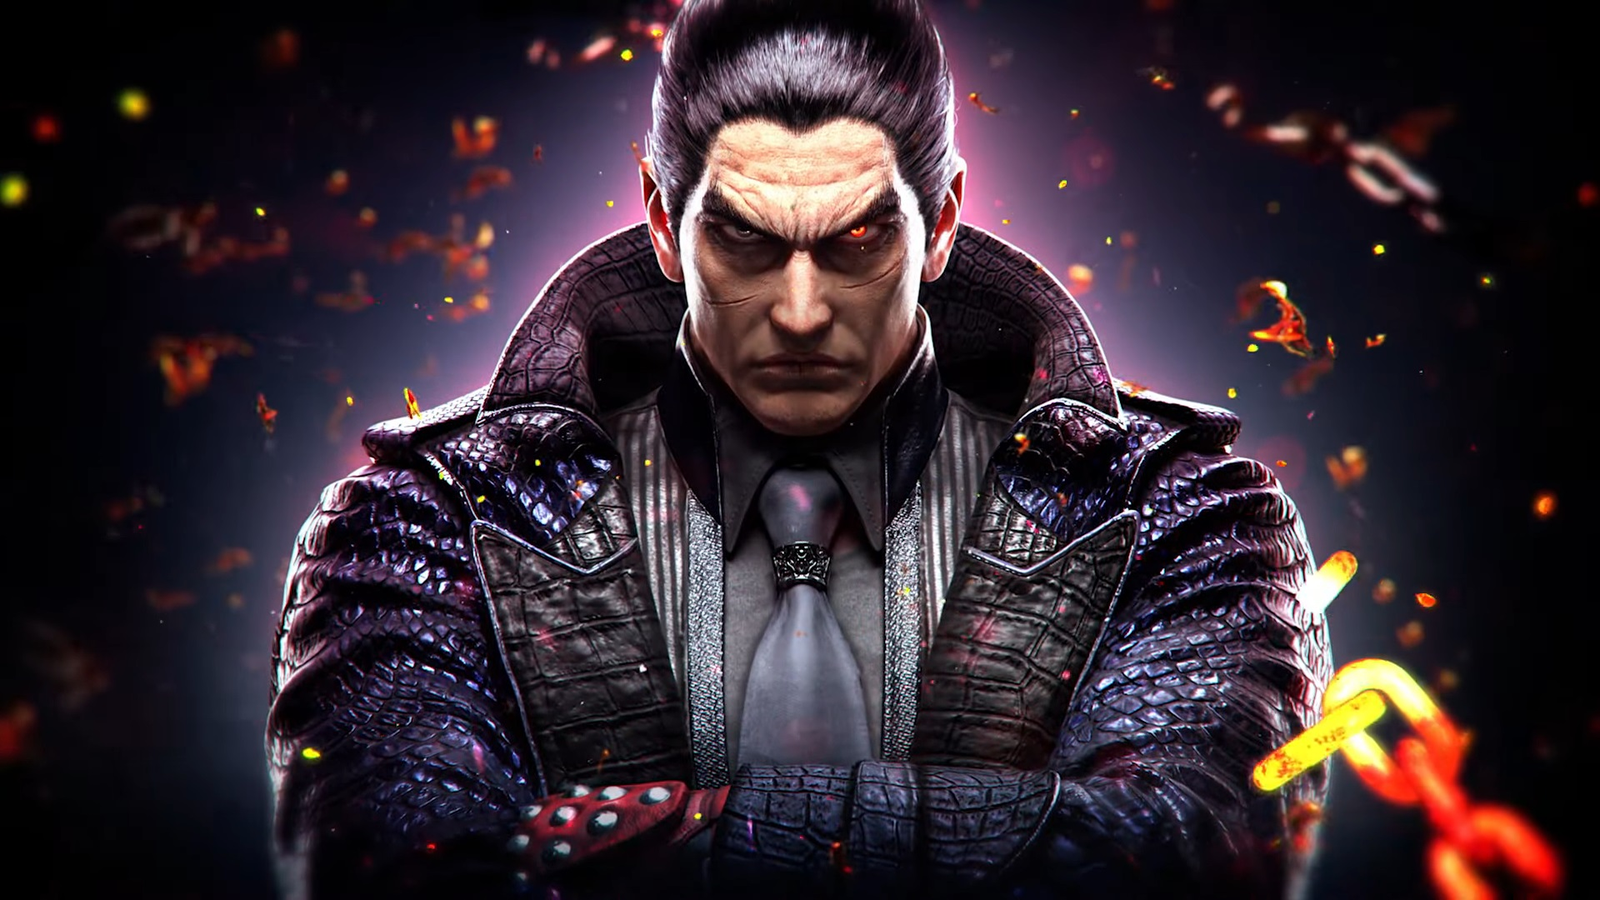 Tekken 8 revealed, platforms and release date details 